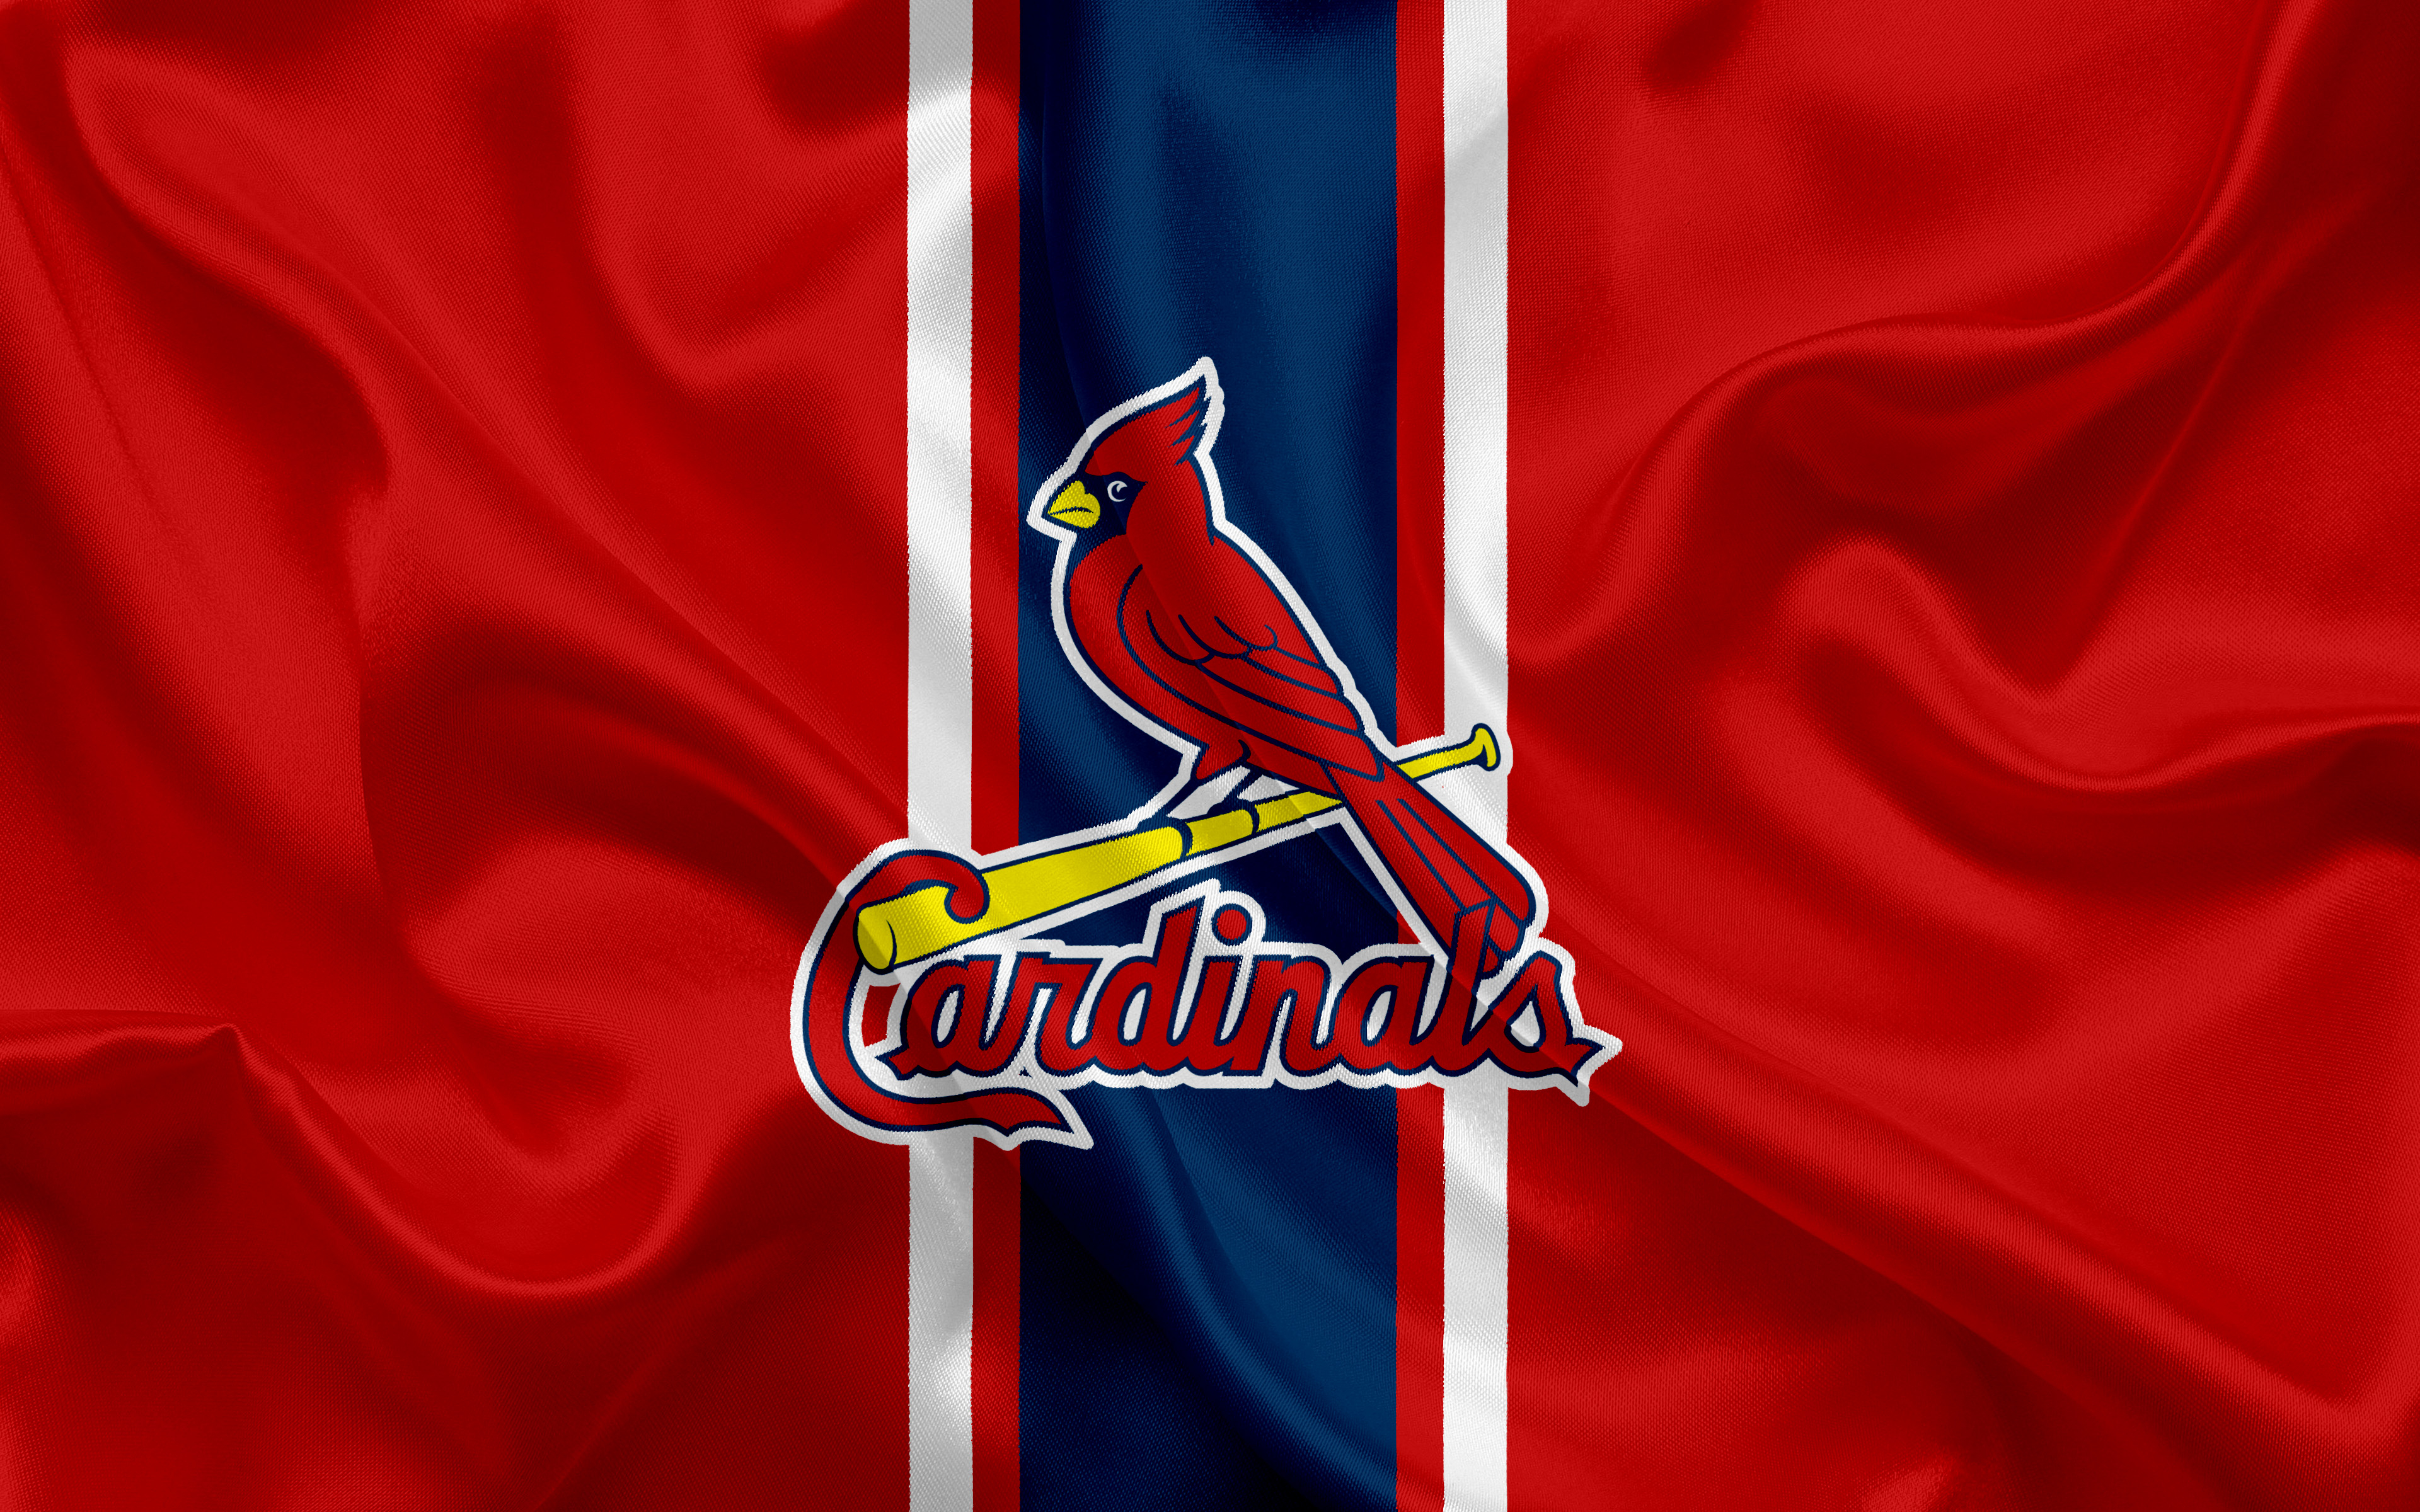 st louis cardinals, sports, baseball, logo, mlb